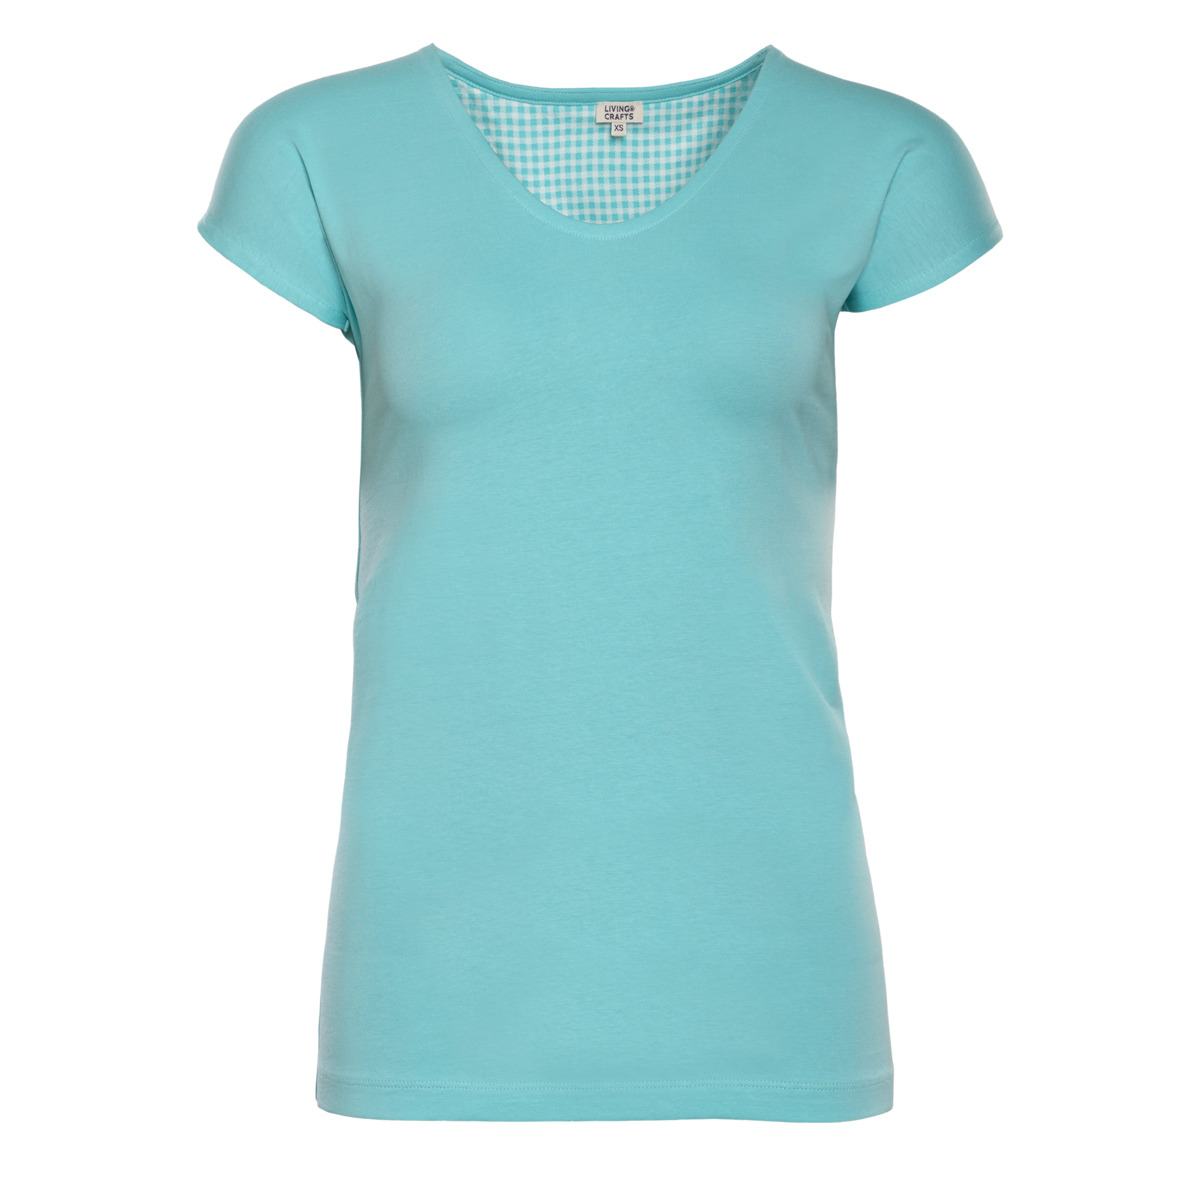 Turquoise Sleep shirt, OKELANI